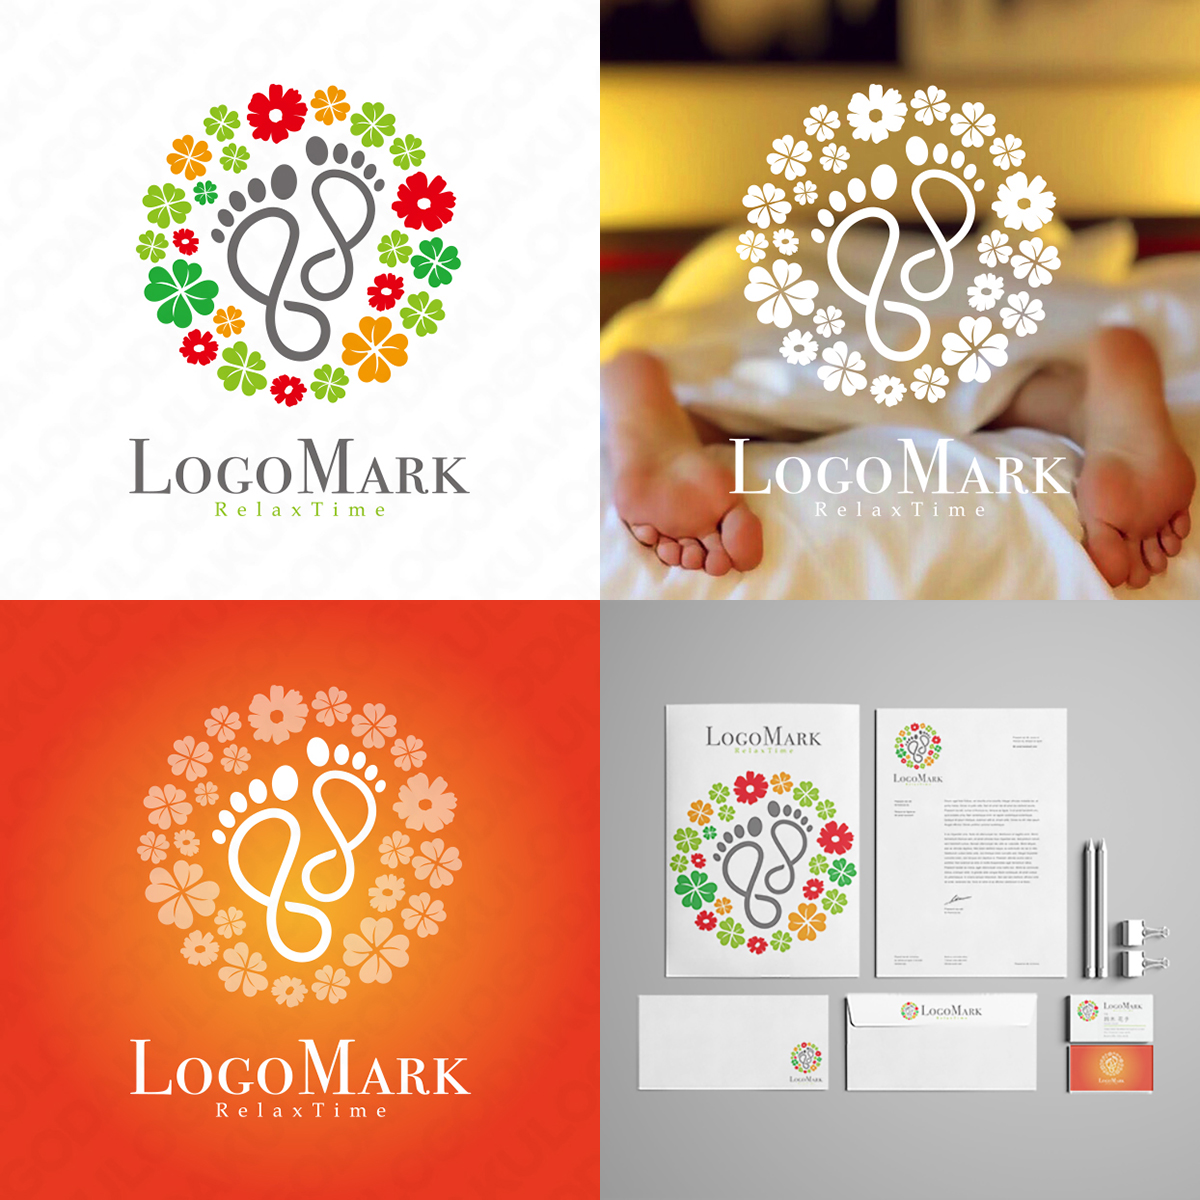 ロゴだく の 花 をモチーフにしたロゴは癒やしの象徴 マーク デザイン制作 作成なら ロゴだく